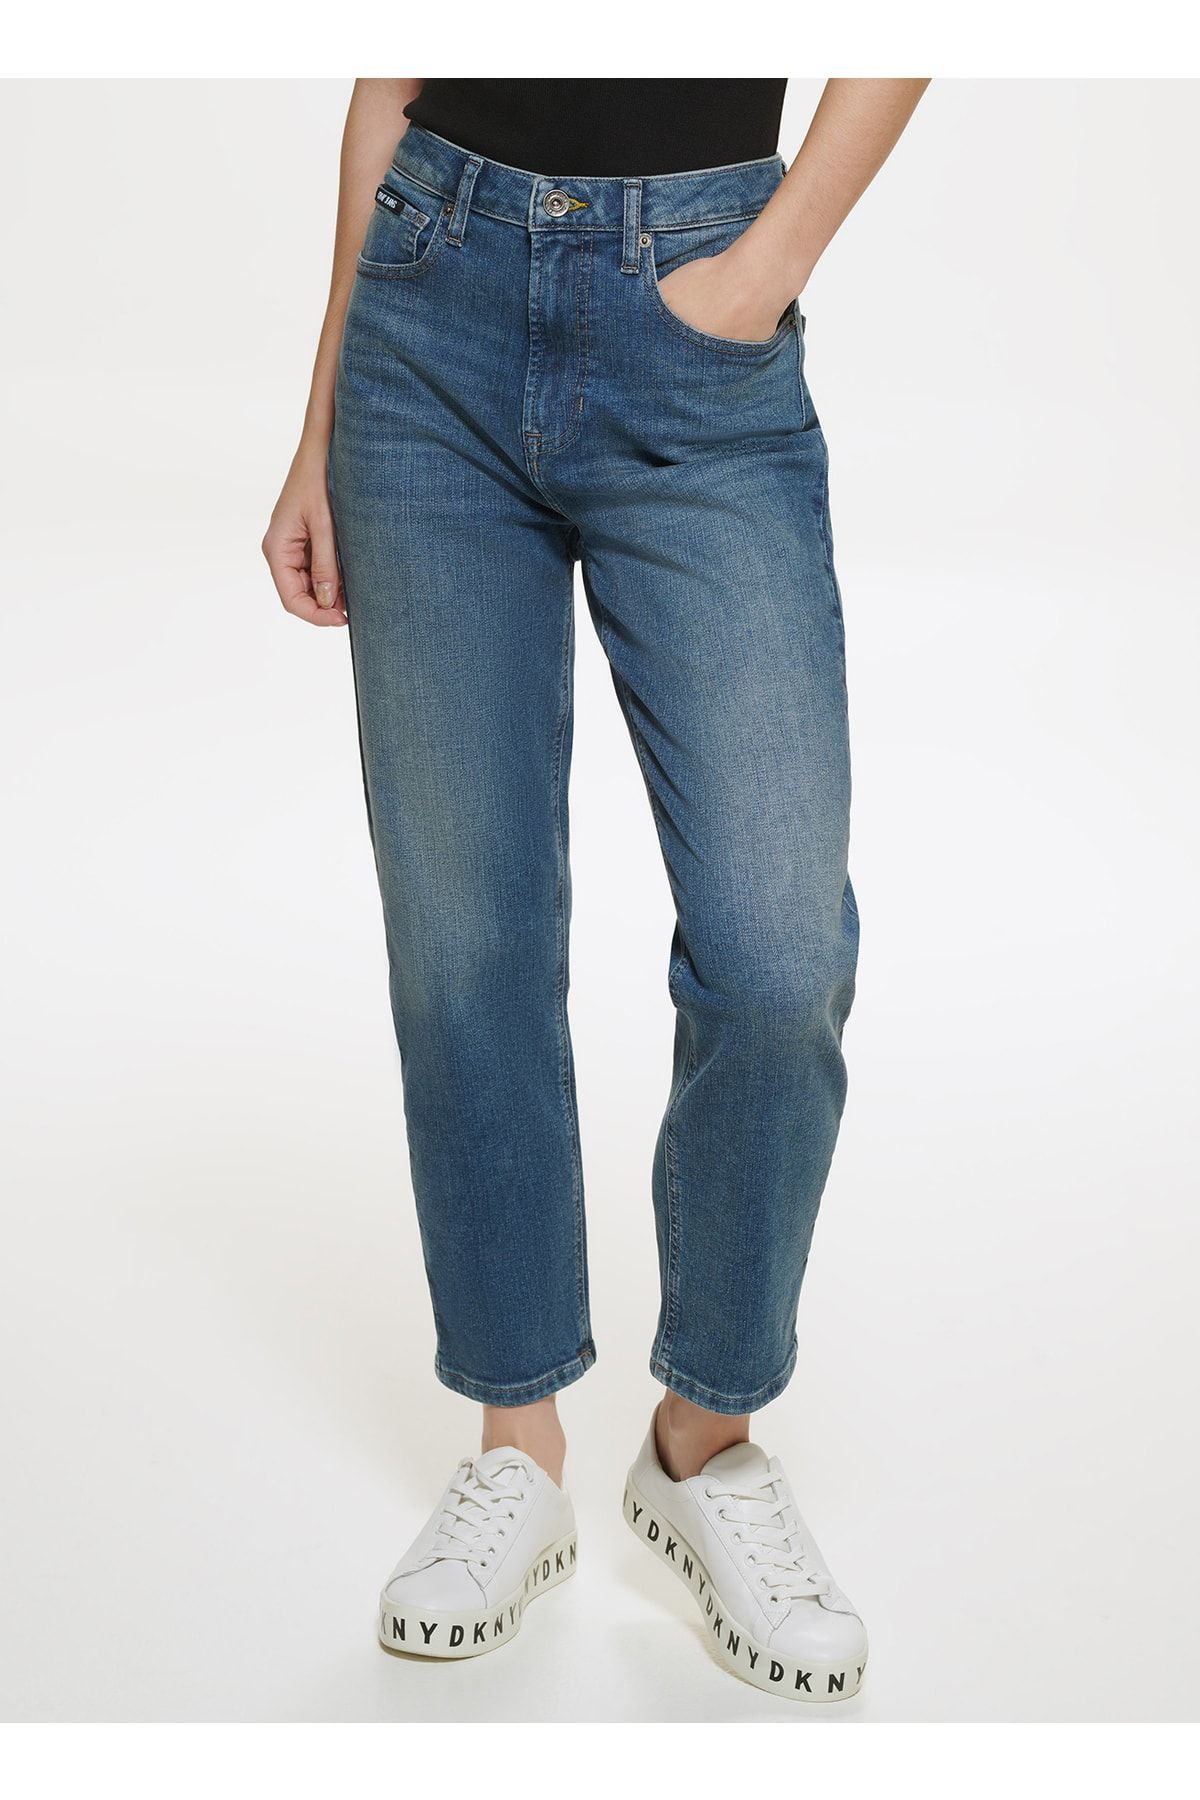 Dkny Jeans Yüksek Bel Regular Straight Kadın Denim Pantolon E2rk0780